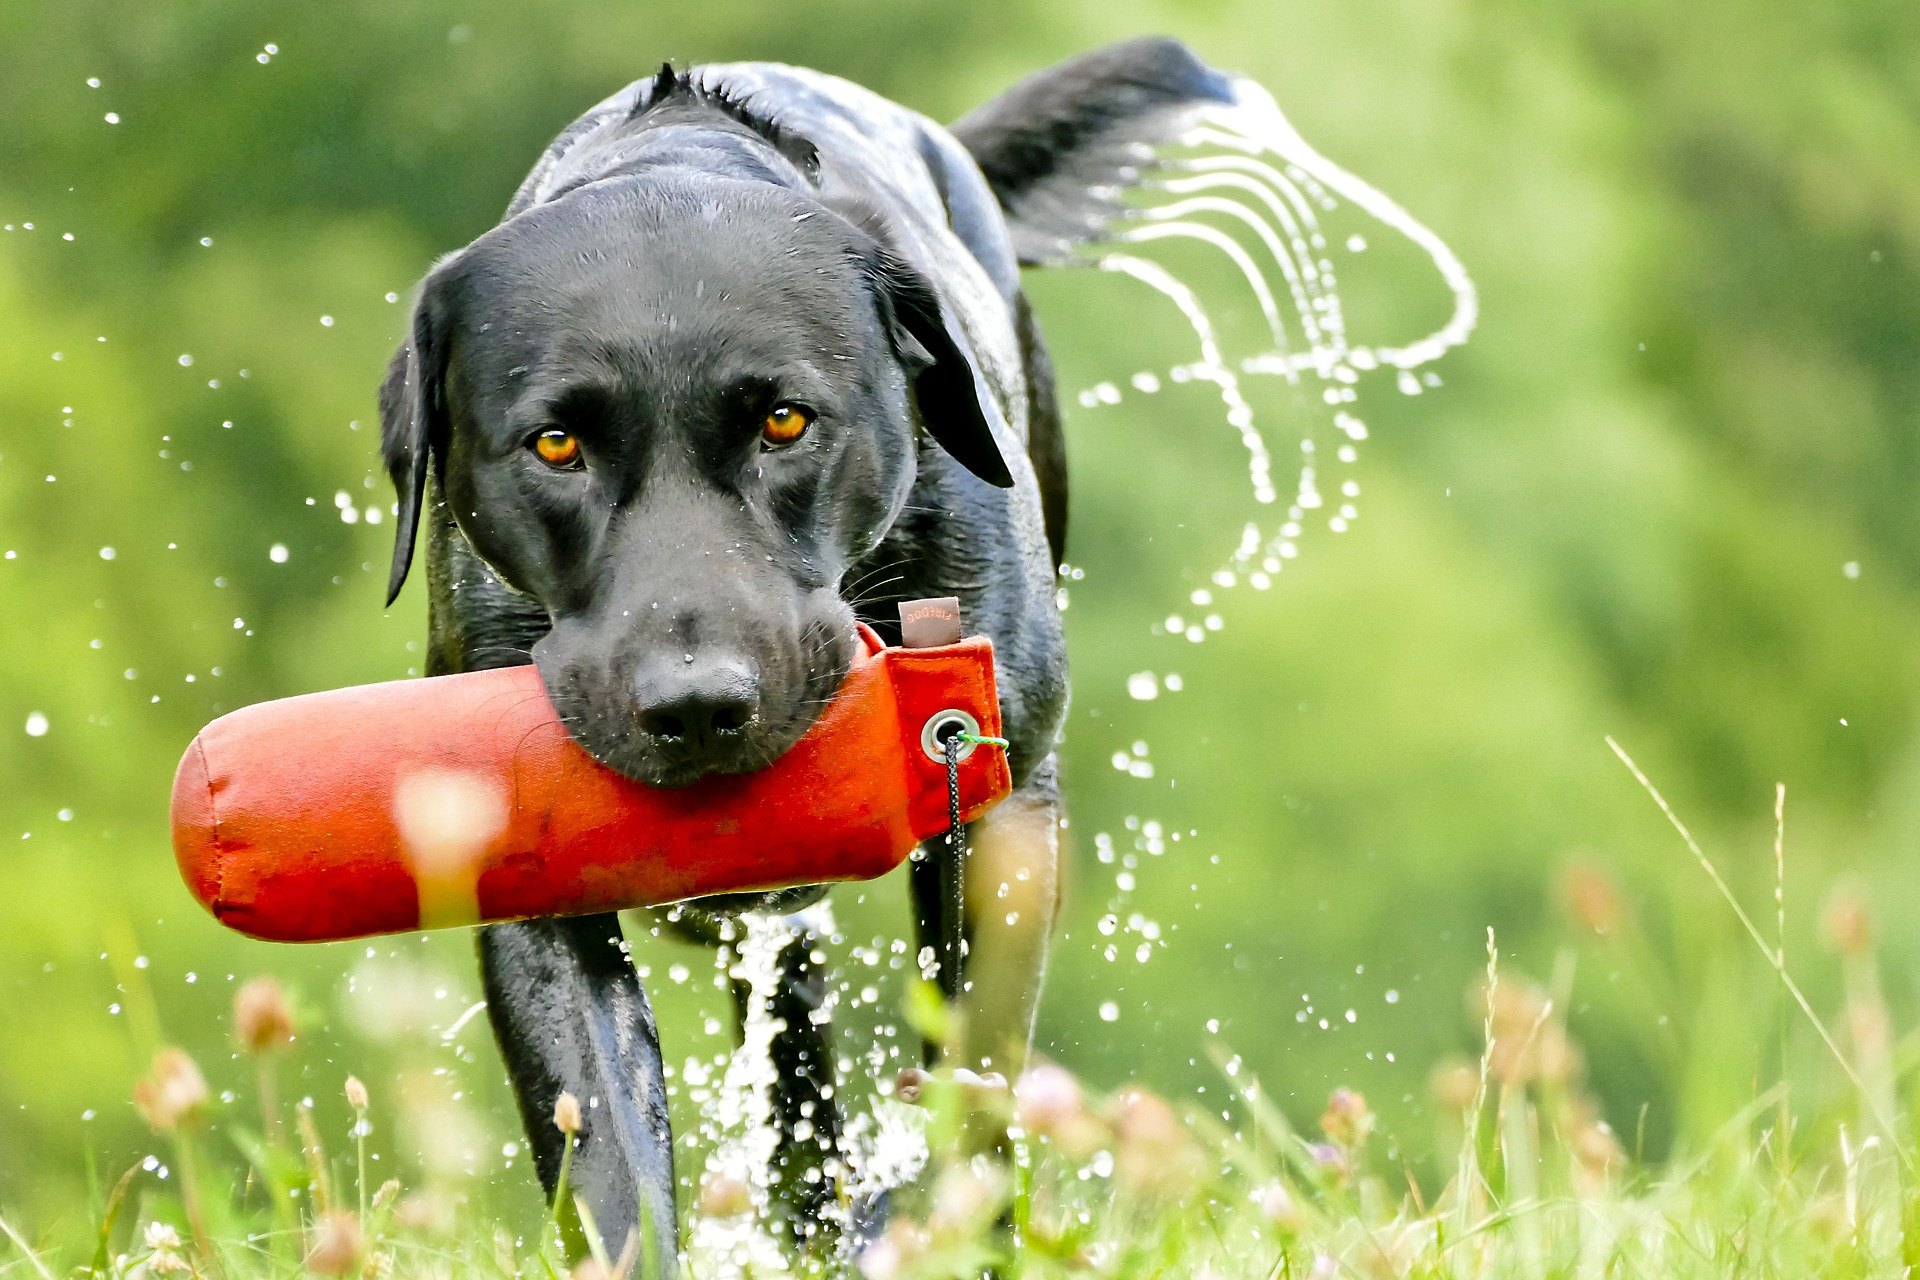 Lovecký pes je štvornožec, ktorý po predchádzajúcom výcviku plní funkciu poľovníckeho pomocníka.